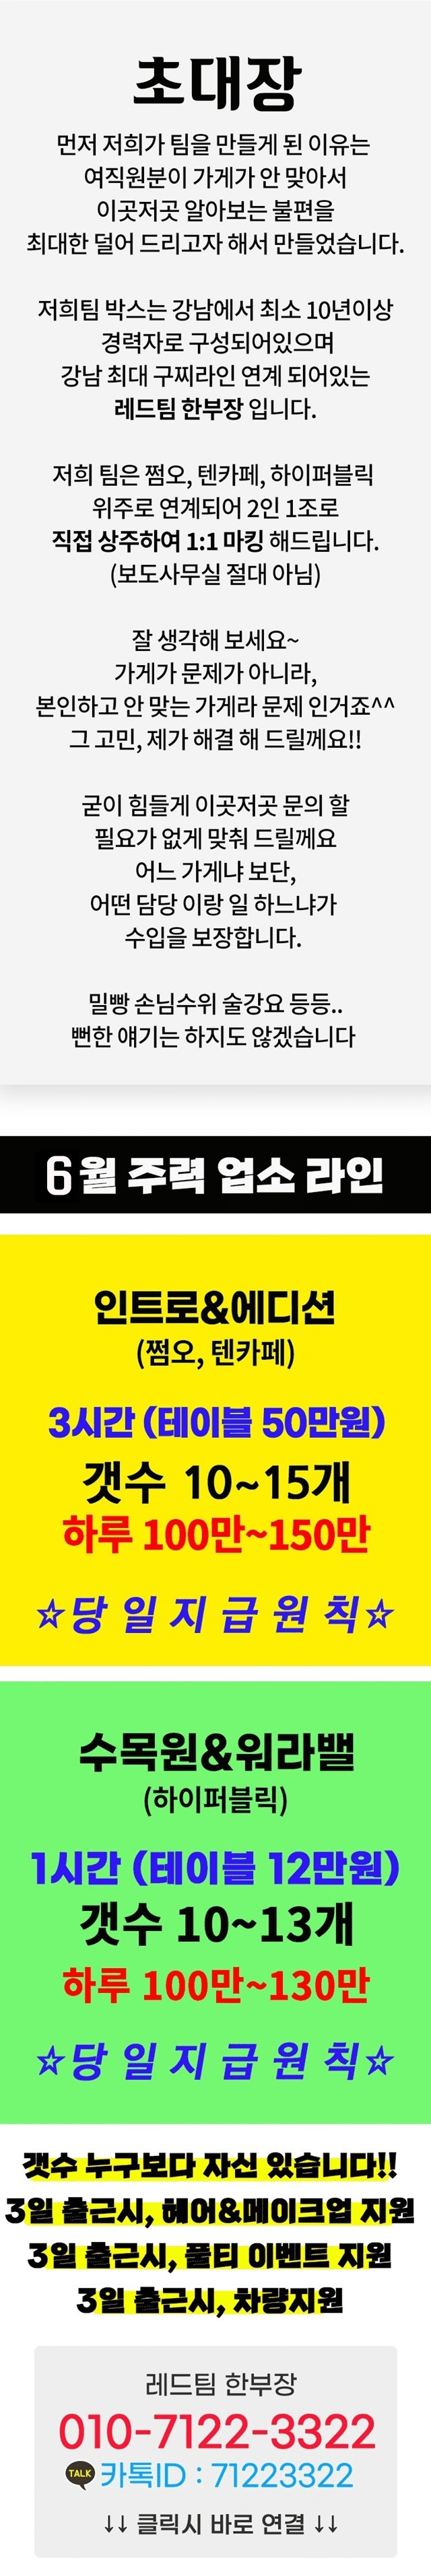 강남유흥알바-6월-이벤트